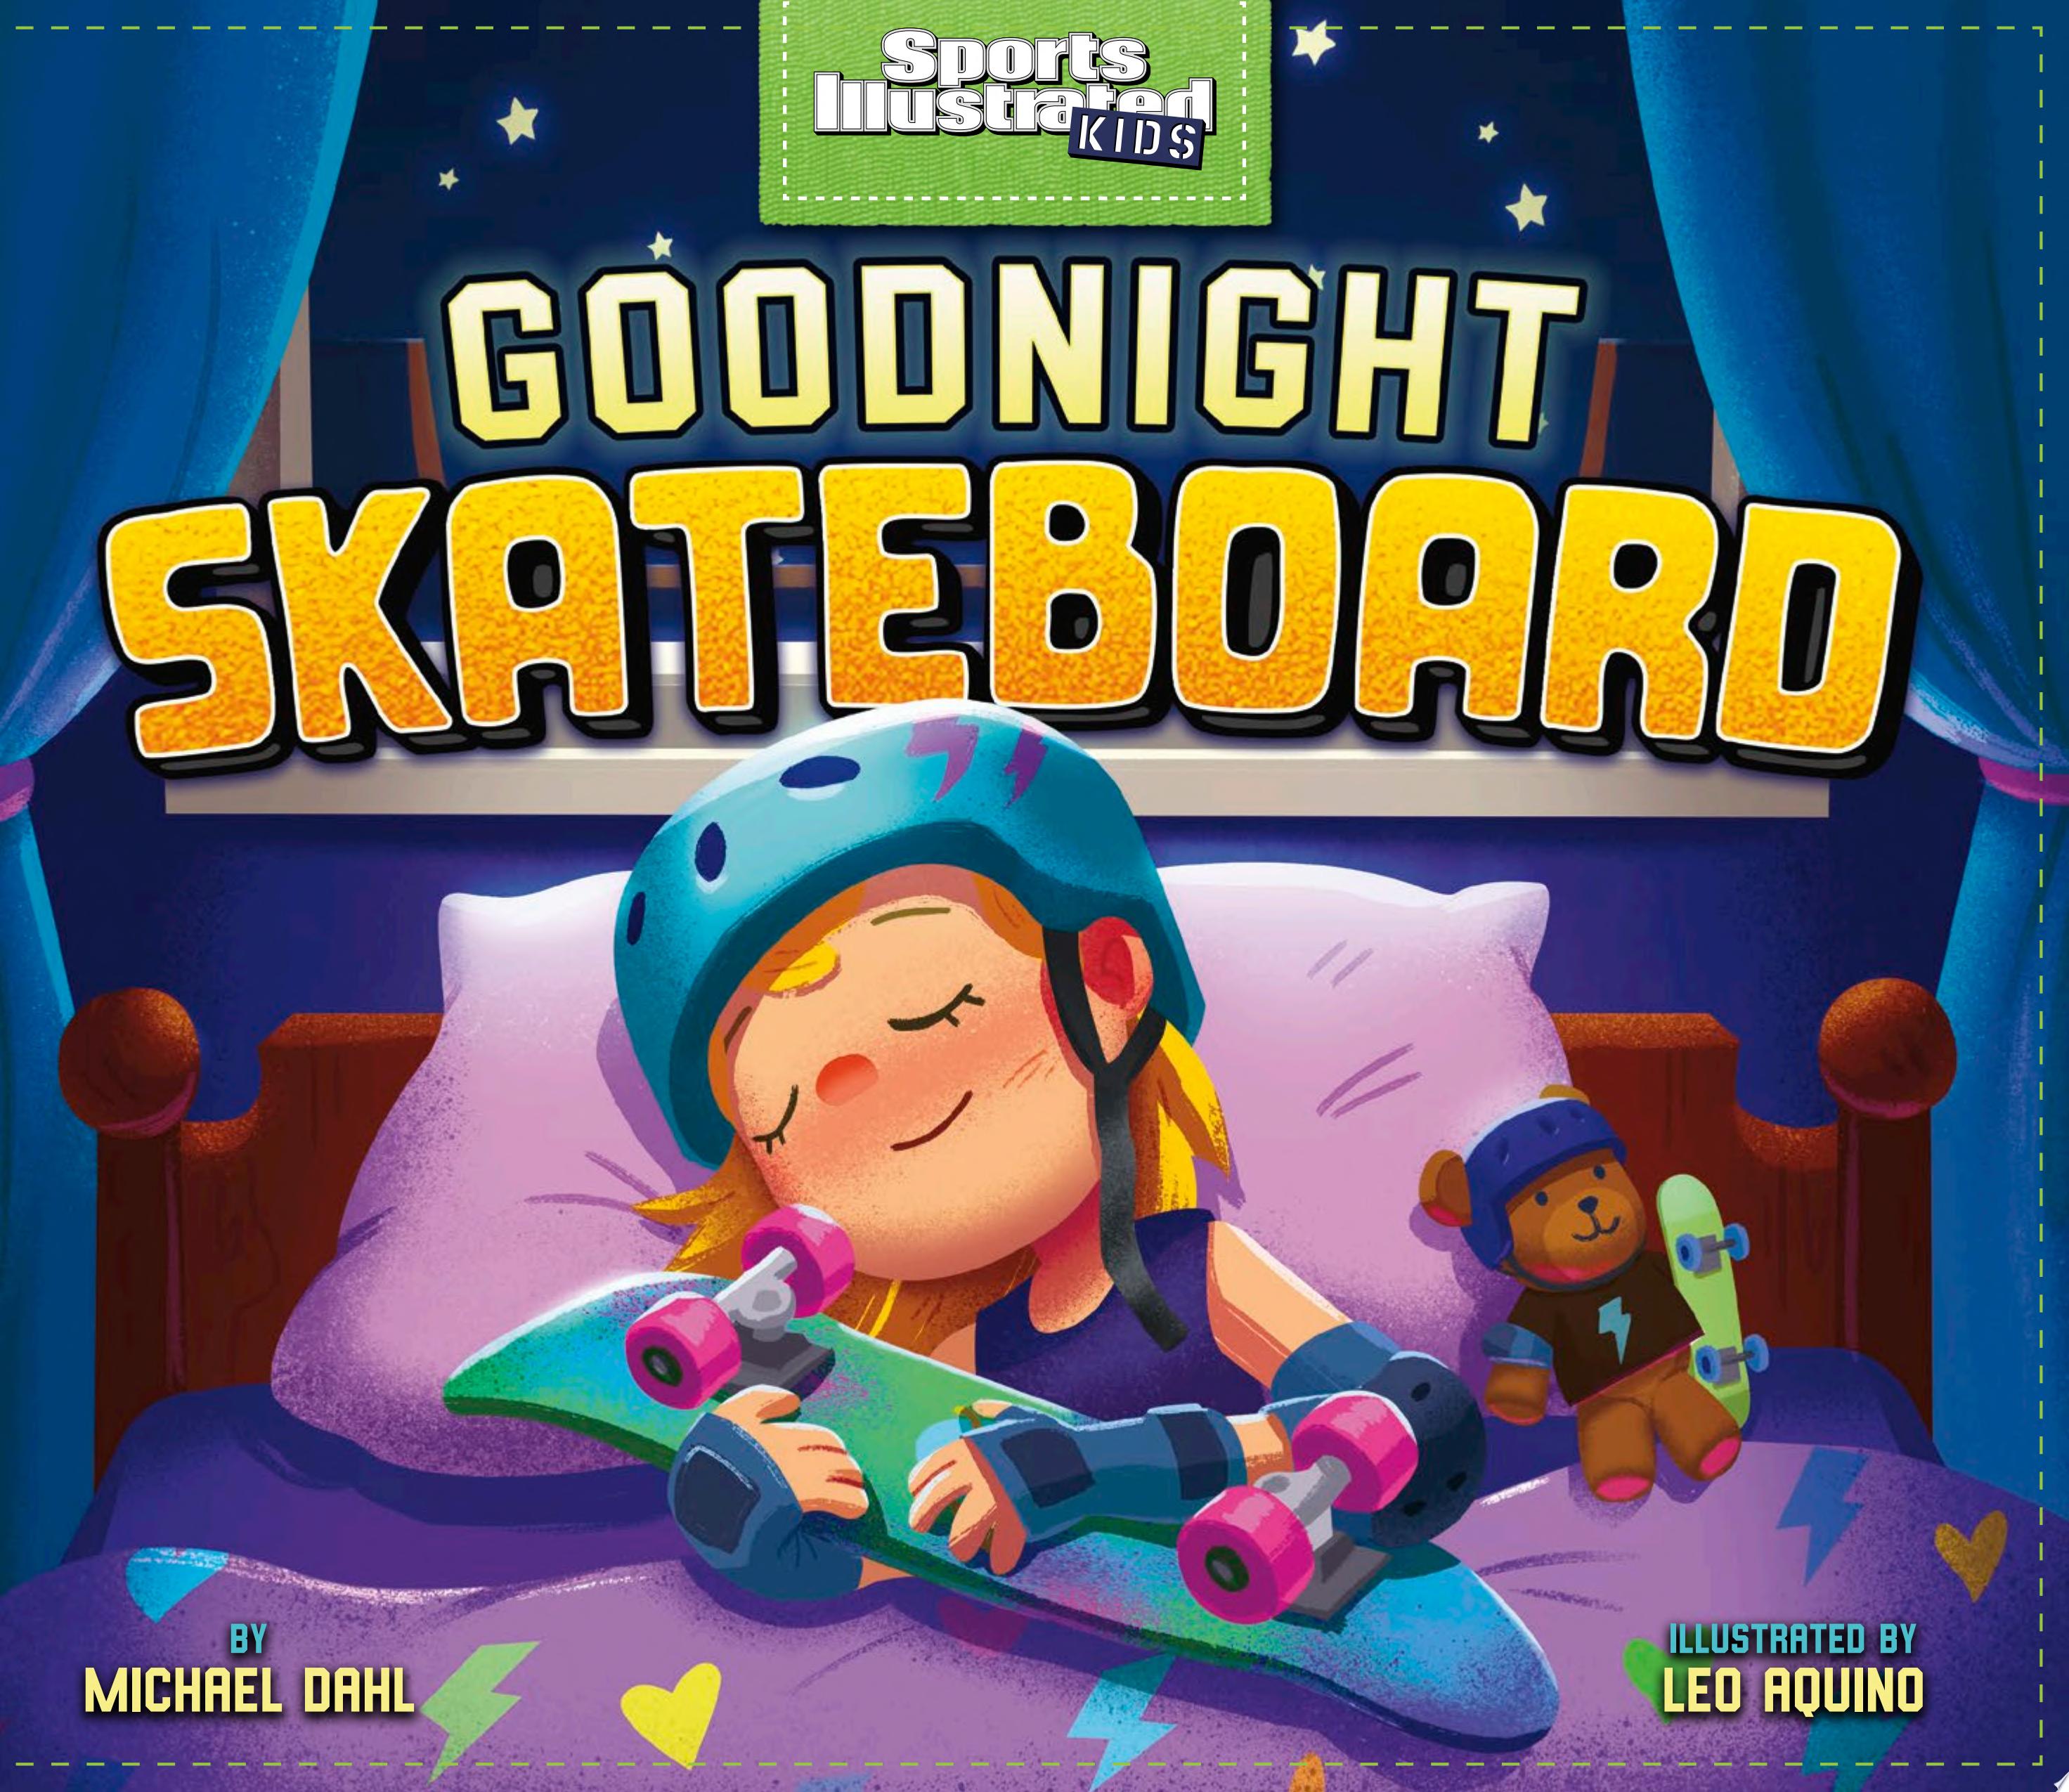 Image for "Goodnight Skateboard"